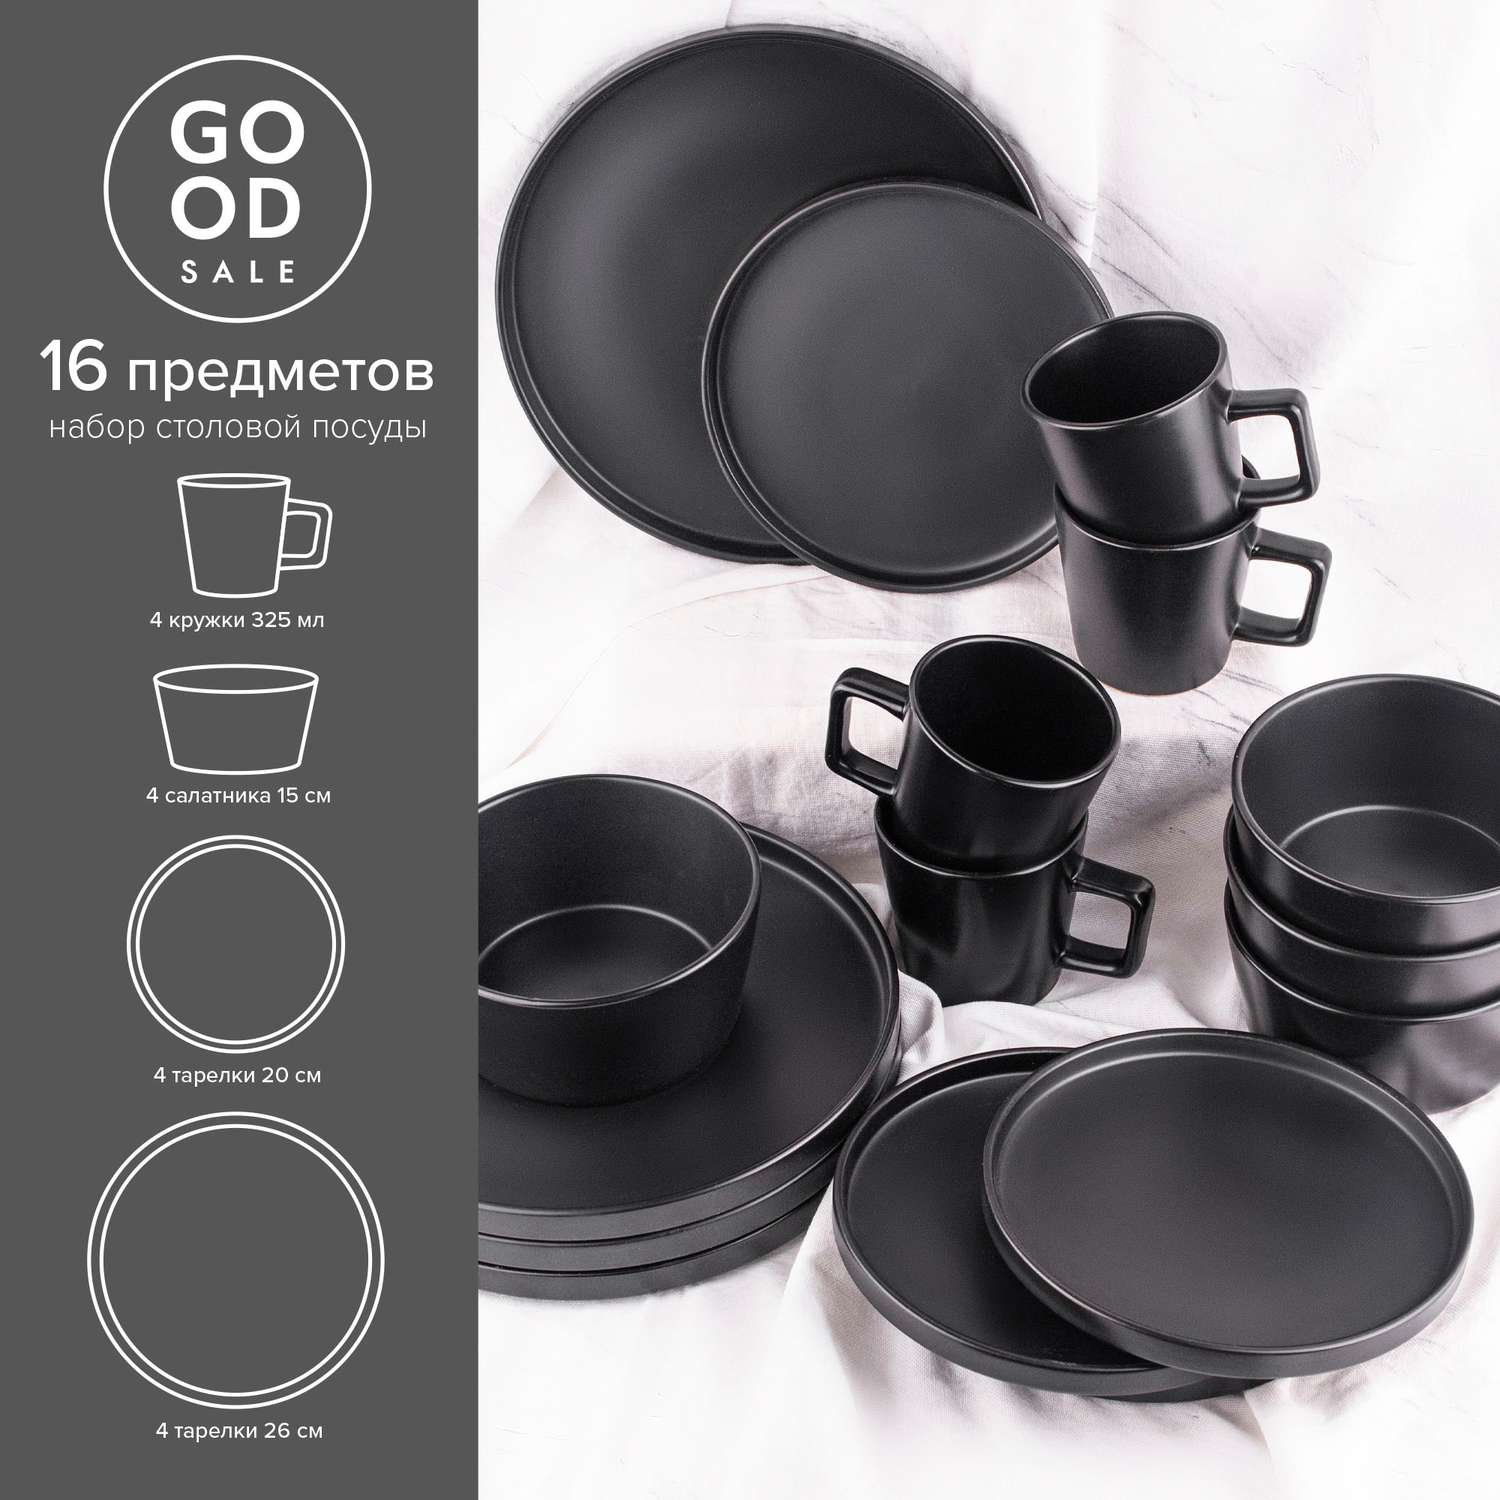 Набор столовой посуды Good Sale керамический 16 предметов - фото 3